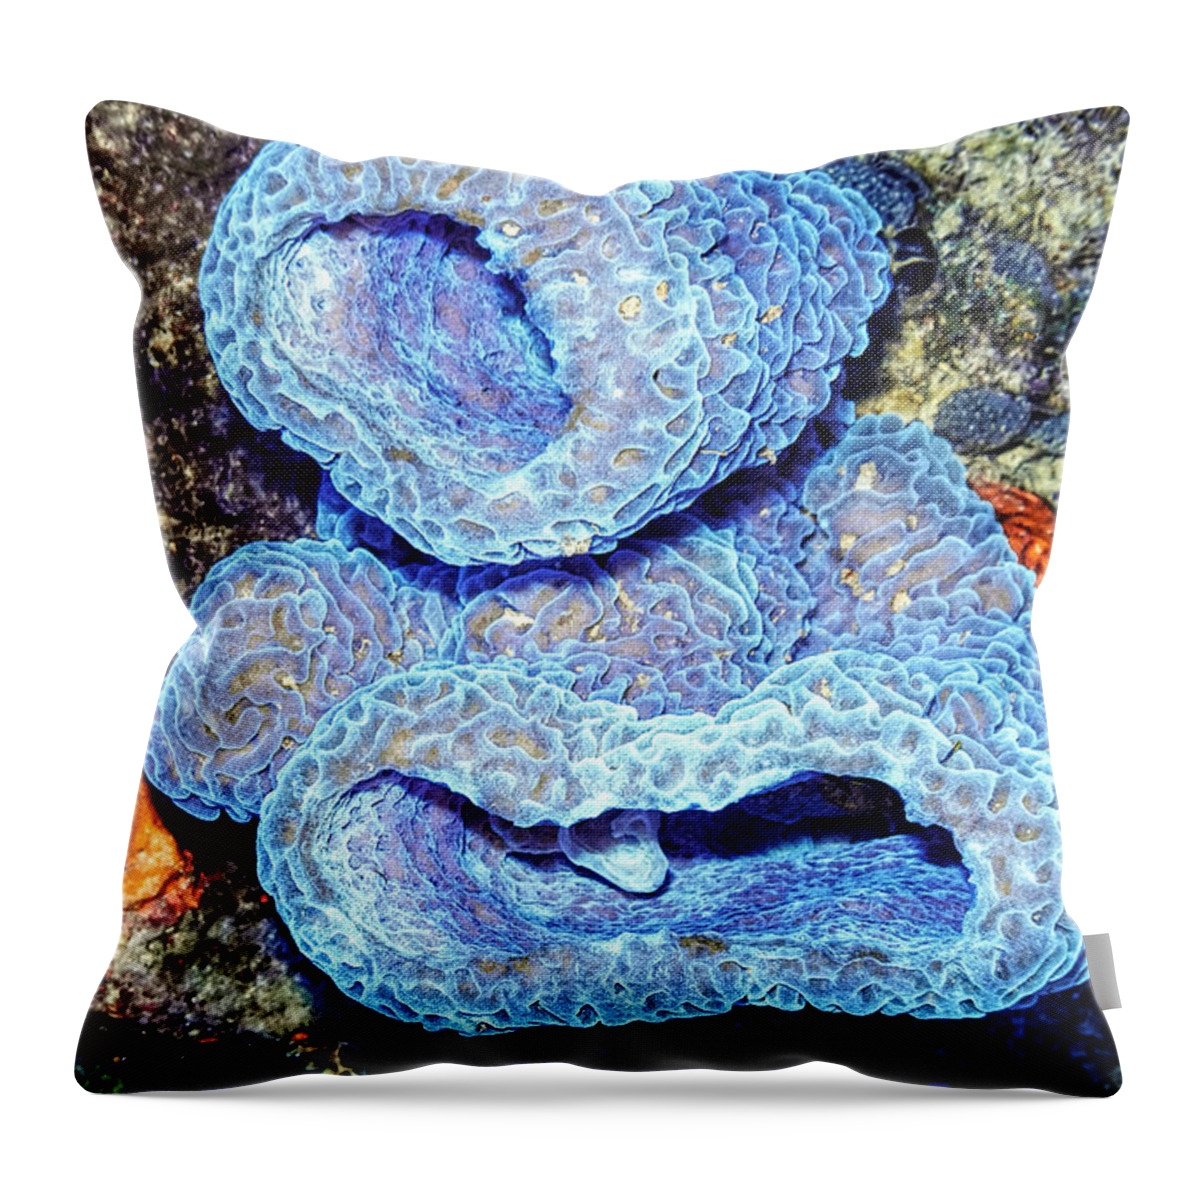 Azure Vase Sponge Throw Pillow featuring the photograph Azure Vase Sponge Impossible Blue by Perla Copernik